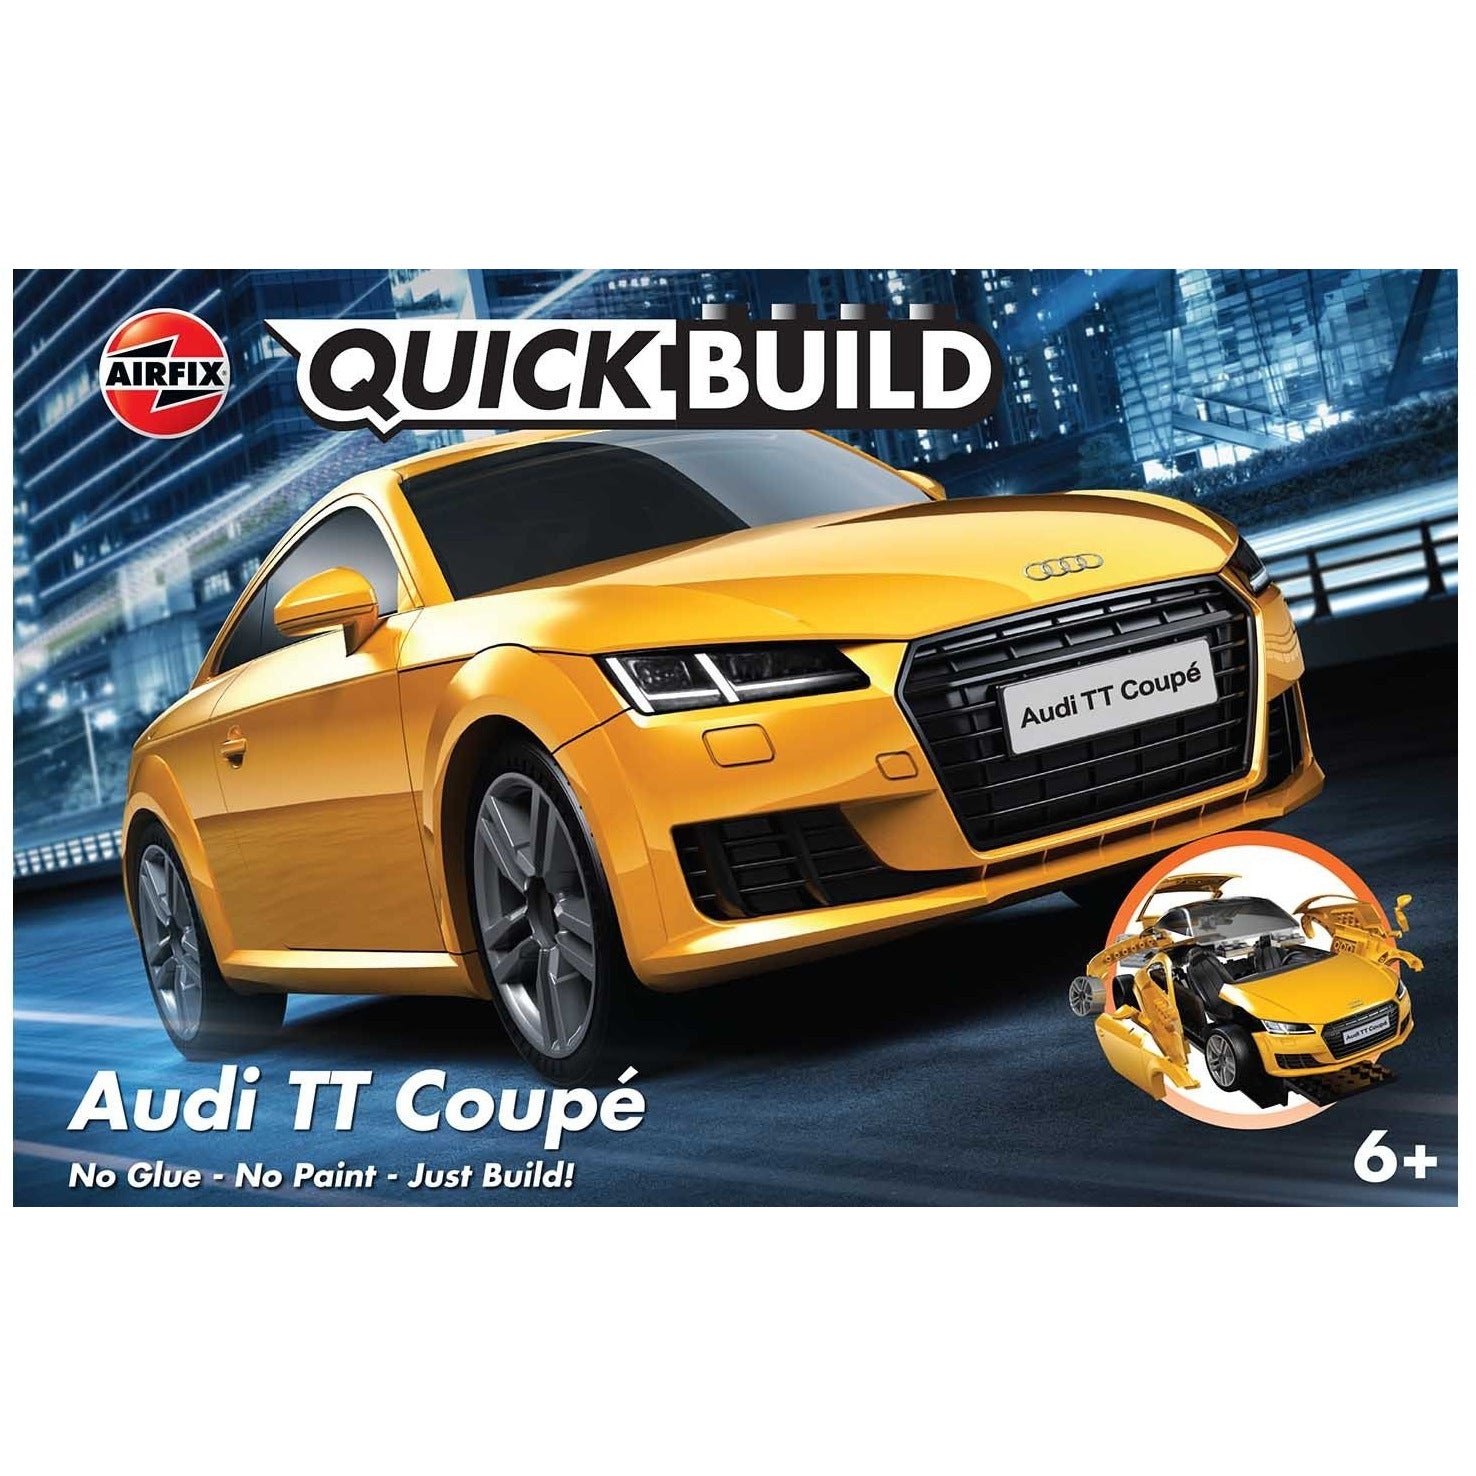 Audi TT Coupe 1/24 Quick Build Car Kit #J6034 by Airfix